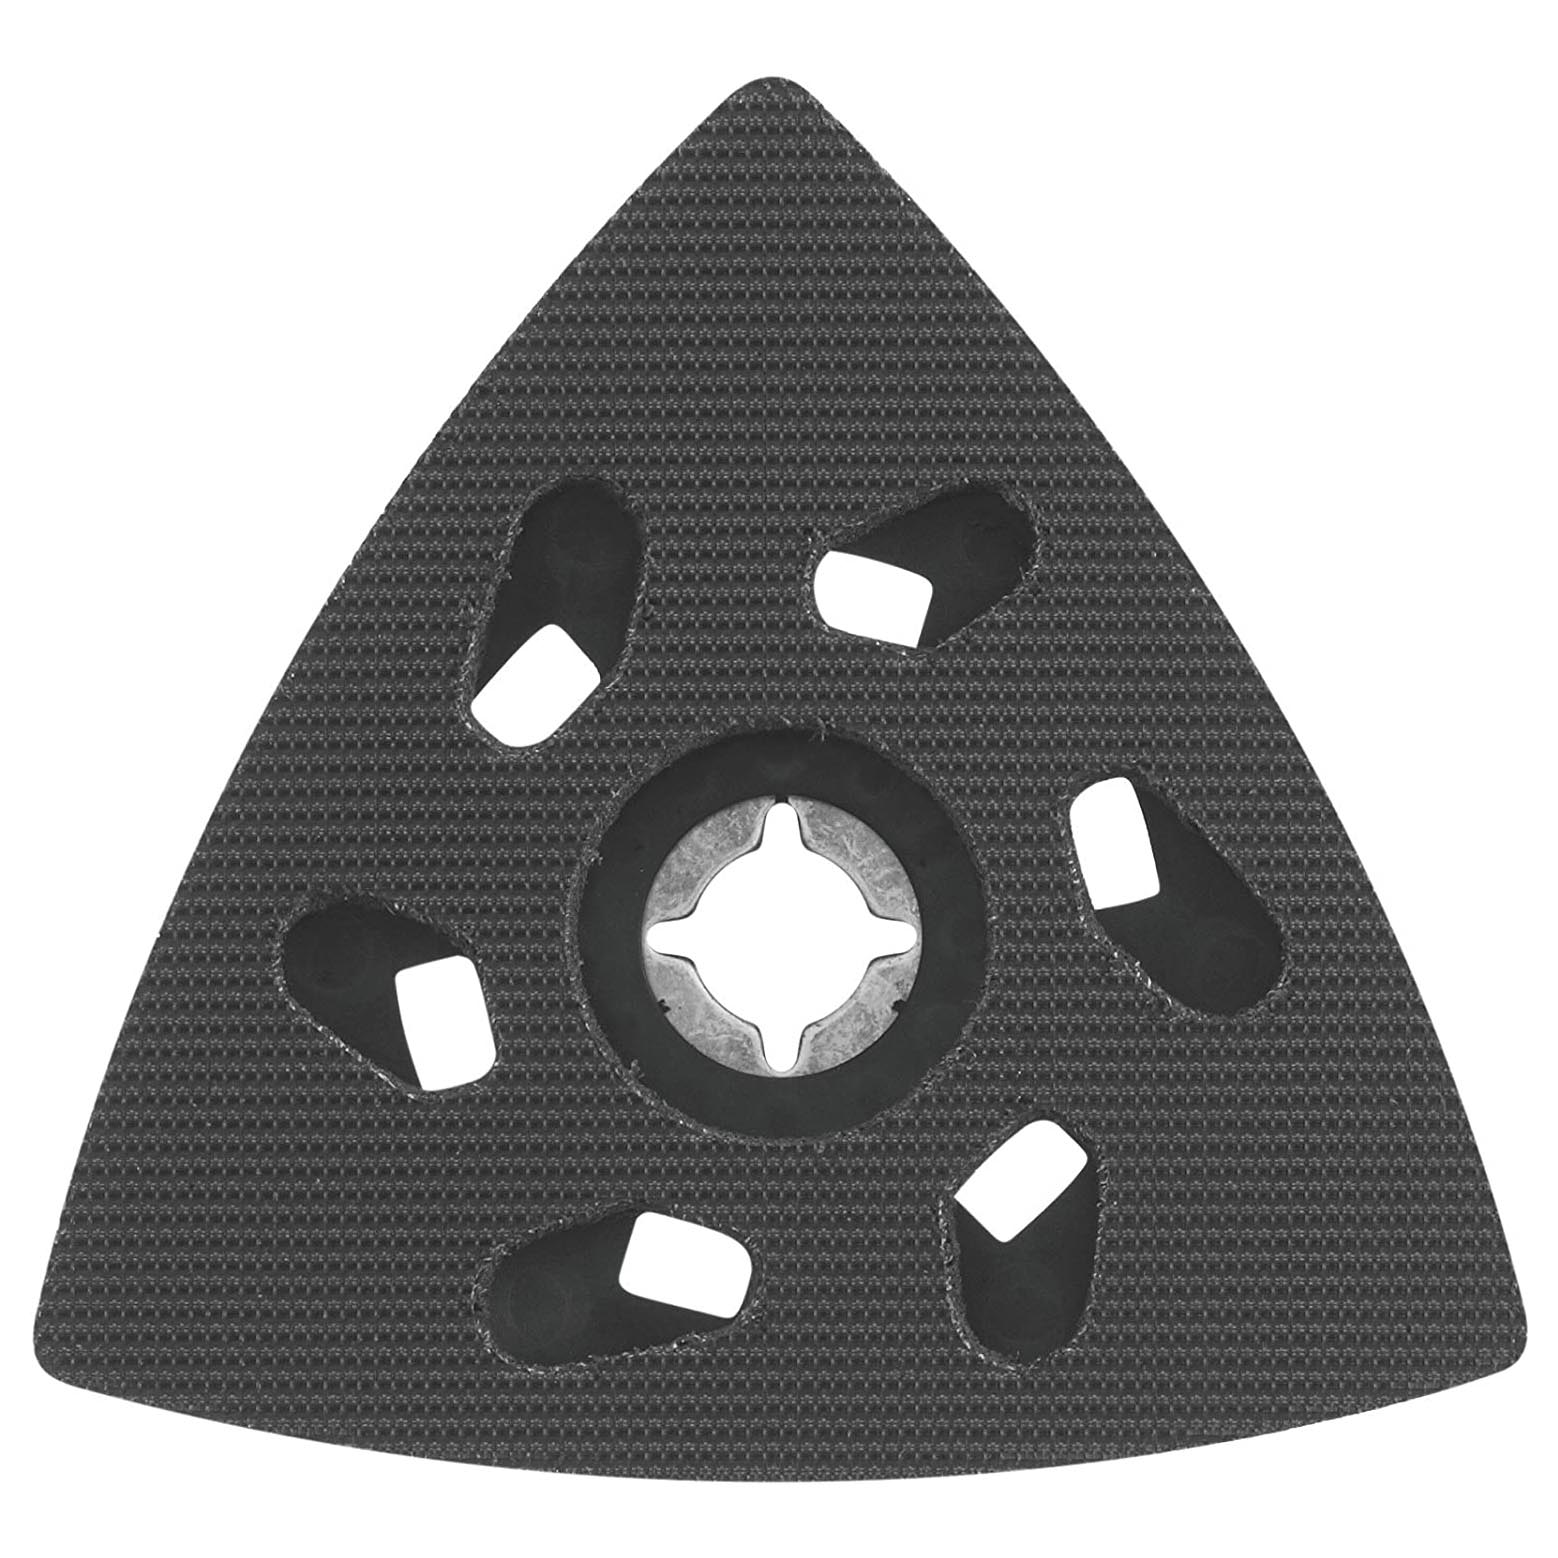 Осциллирующий шлифовальный круг Bosch Starlock Delta OSL350SPD шлифовальный диск 100 мм алмазная отрезка колесо для резки стекла ювелирных изделий камней лезвия для пилы вращающиеся абразивные инстру